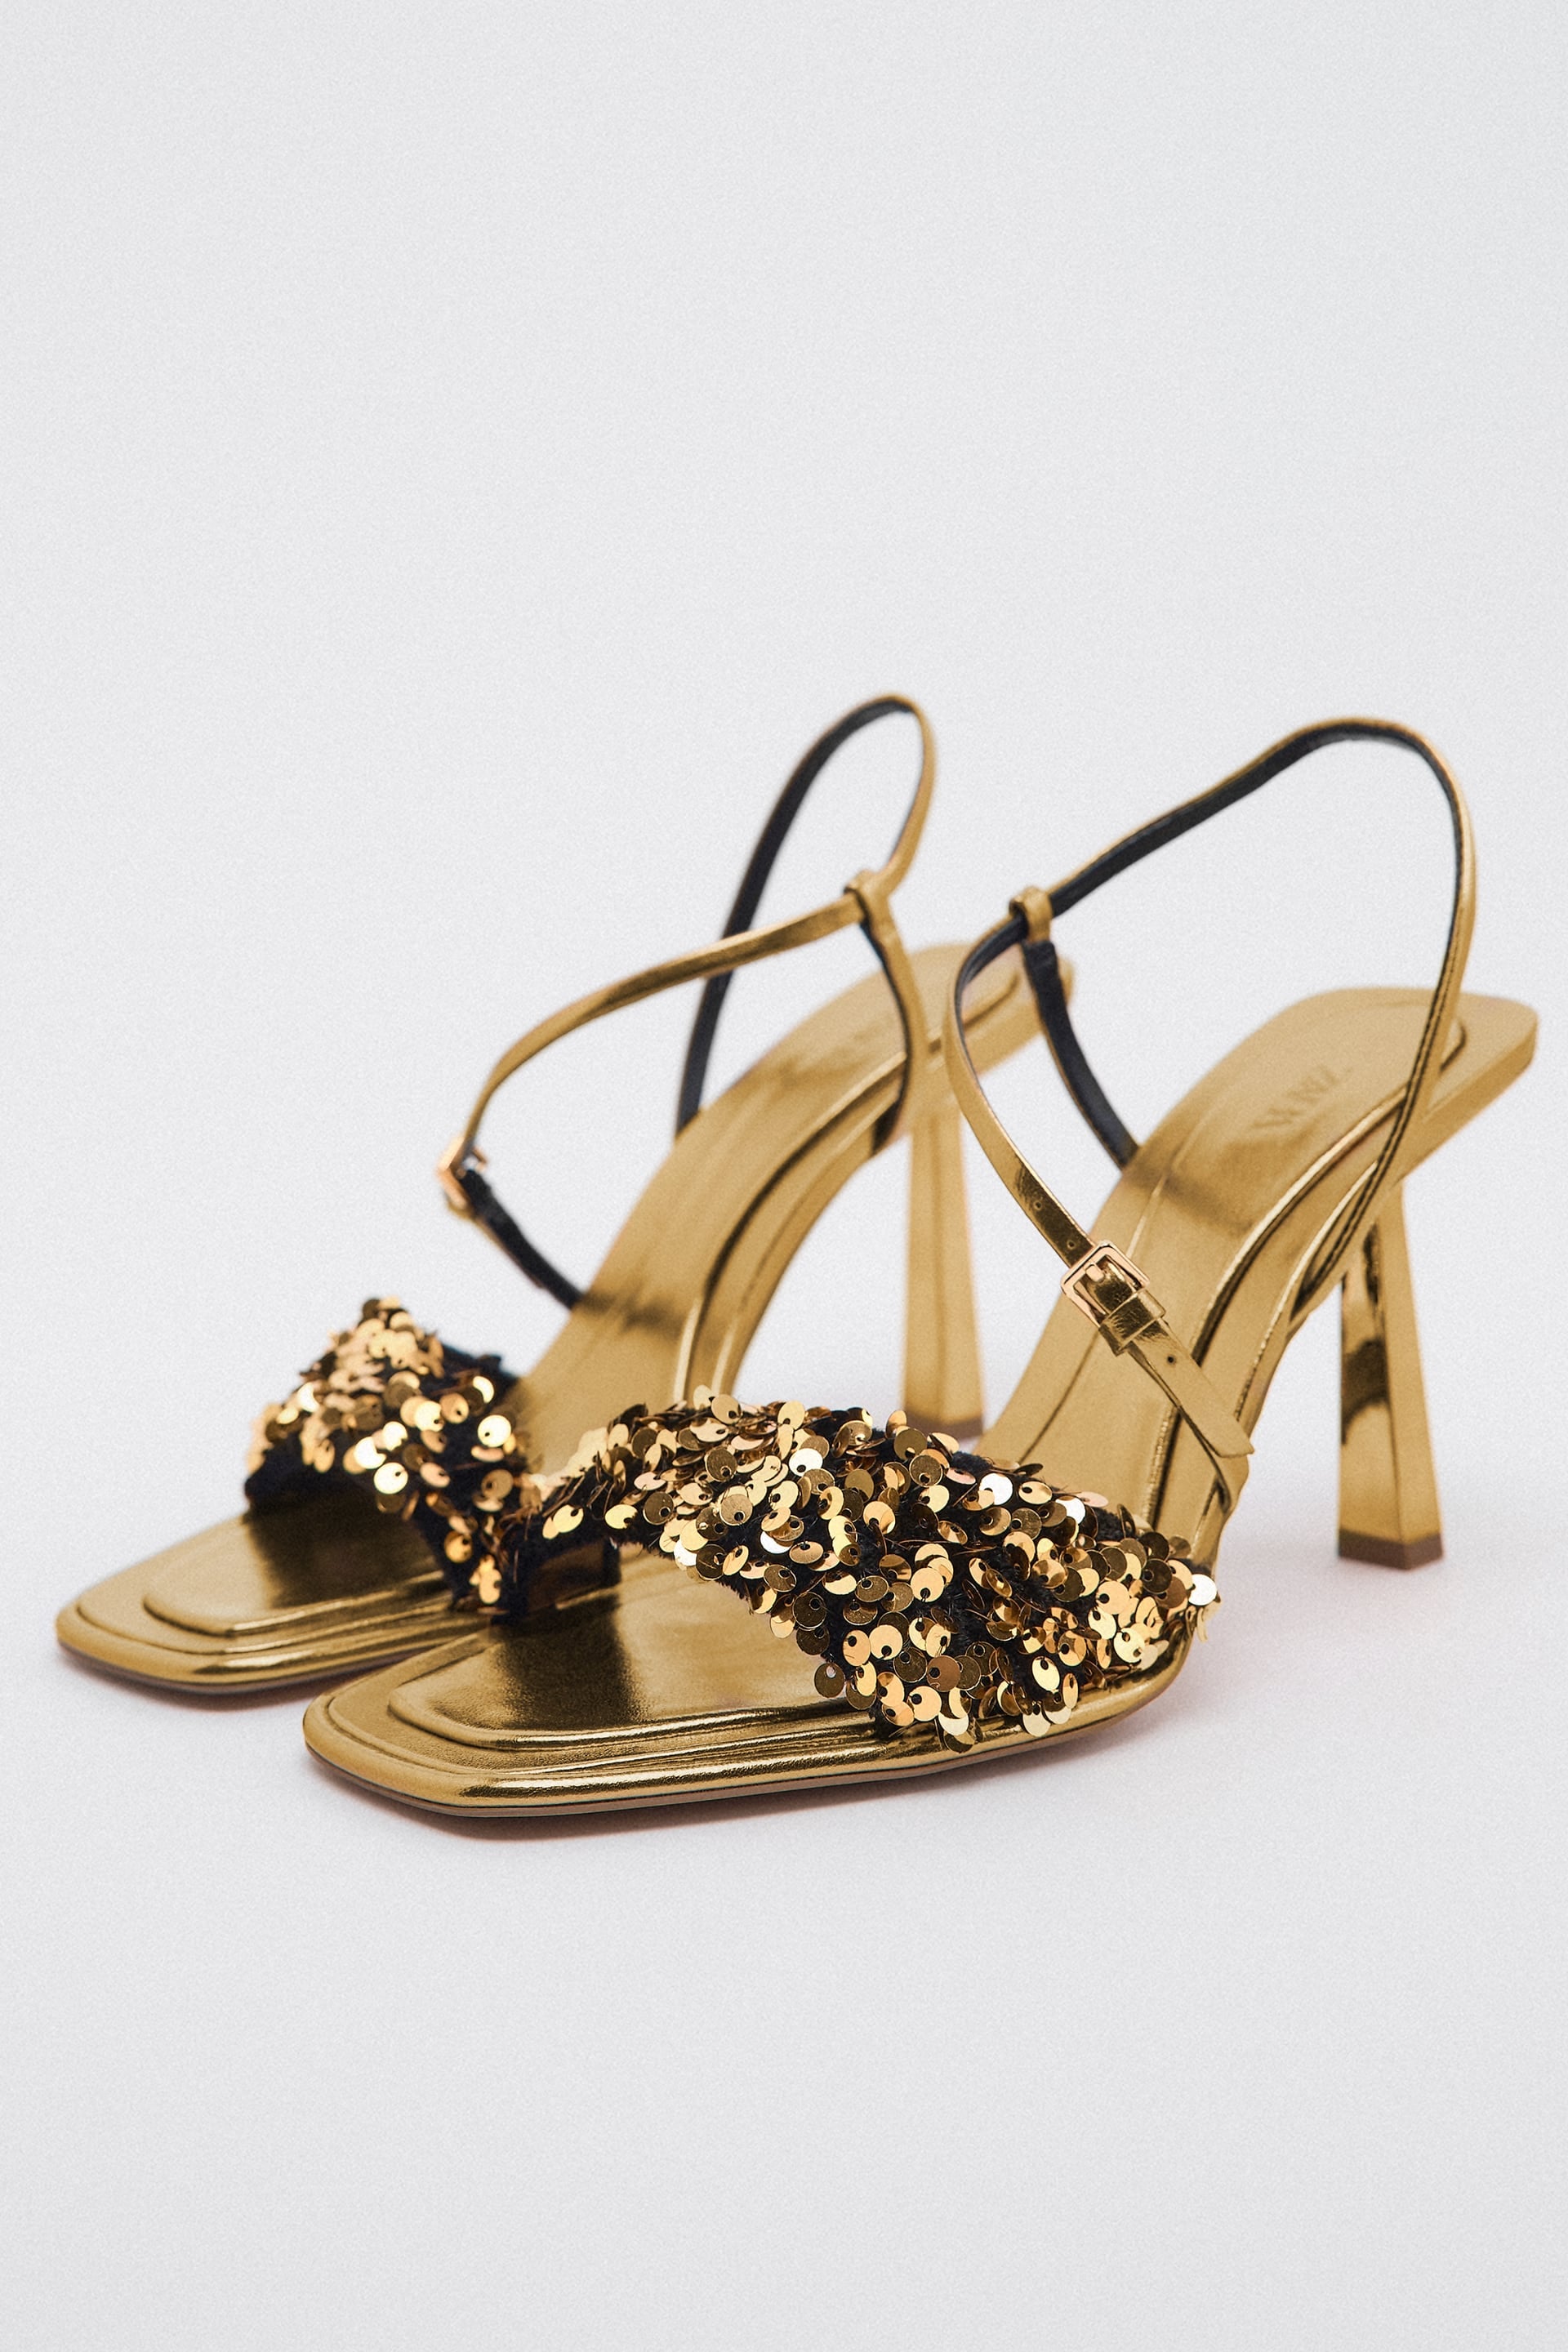 Zara Gold Platform Heels | TikTok